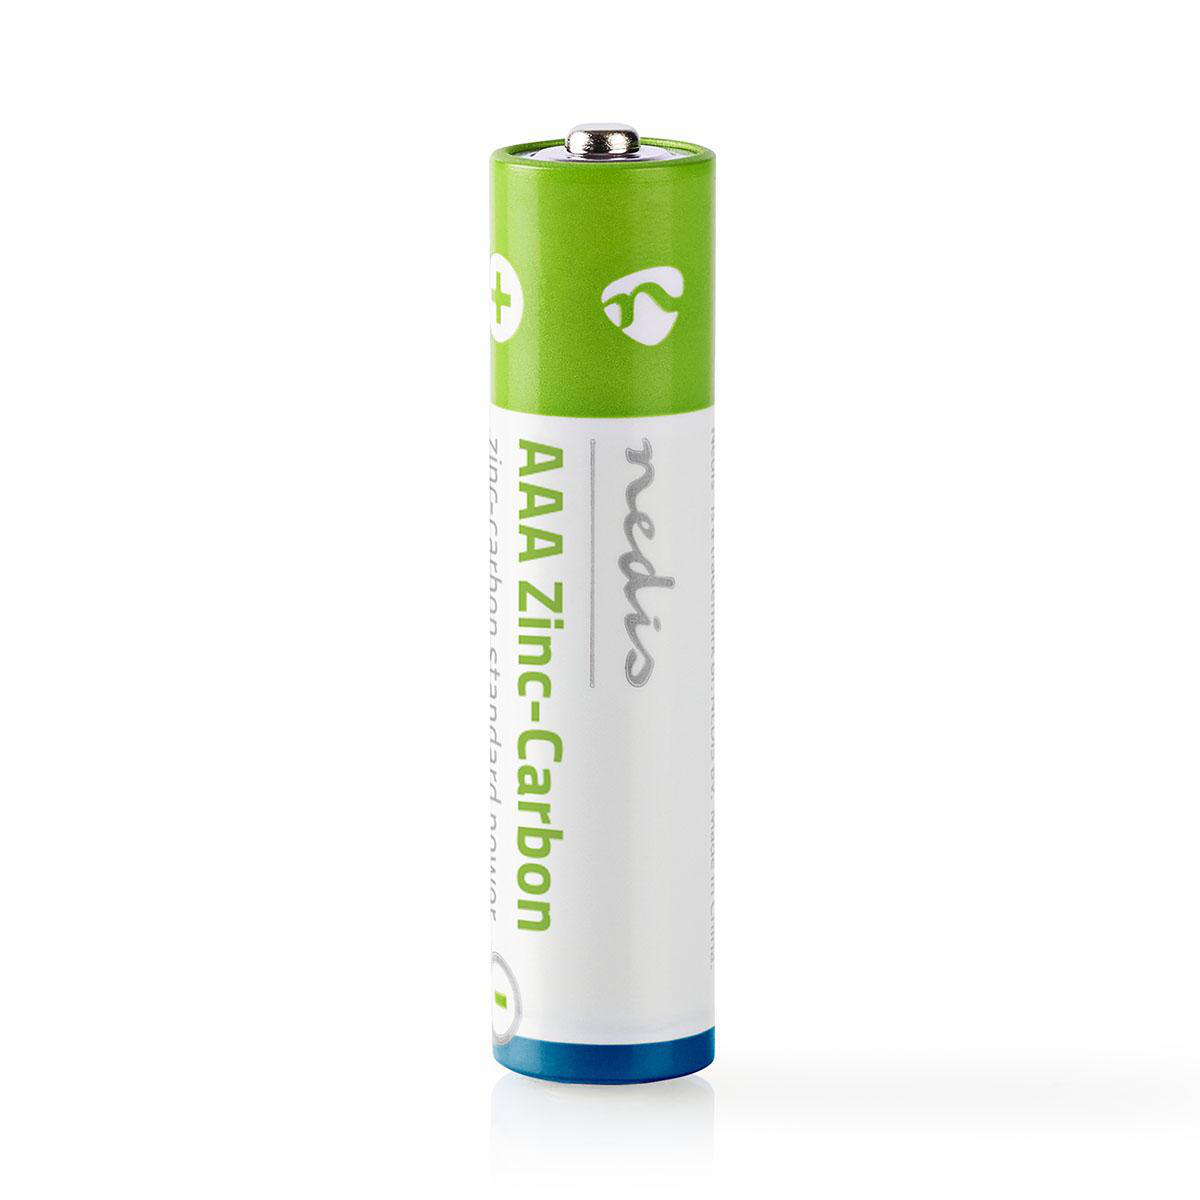 Zinc carbon. Carbon Zinc Battery батарейки. Zinc Carbon батарейки aaar03. AAA И AA батарейки Zinc Carbon. Dian ba Carbon Battery мизинчиковые.